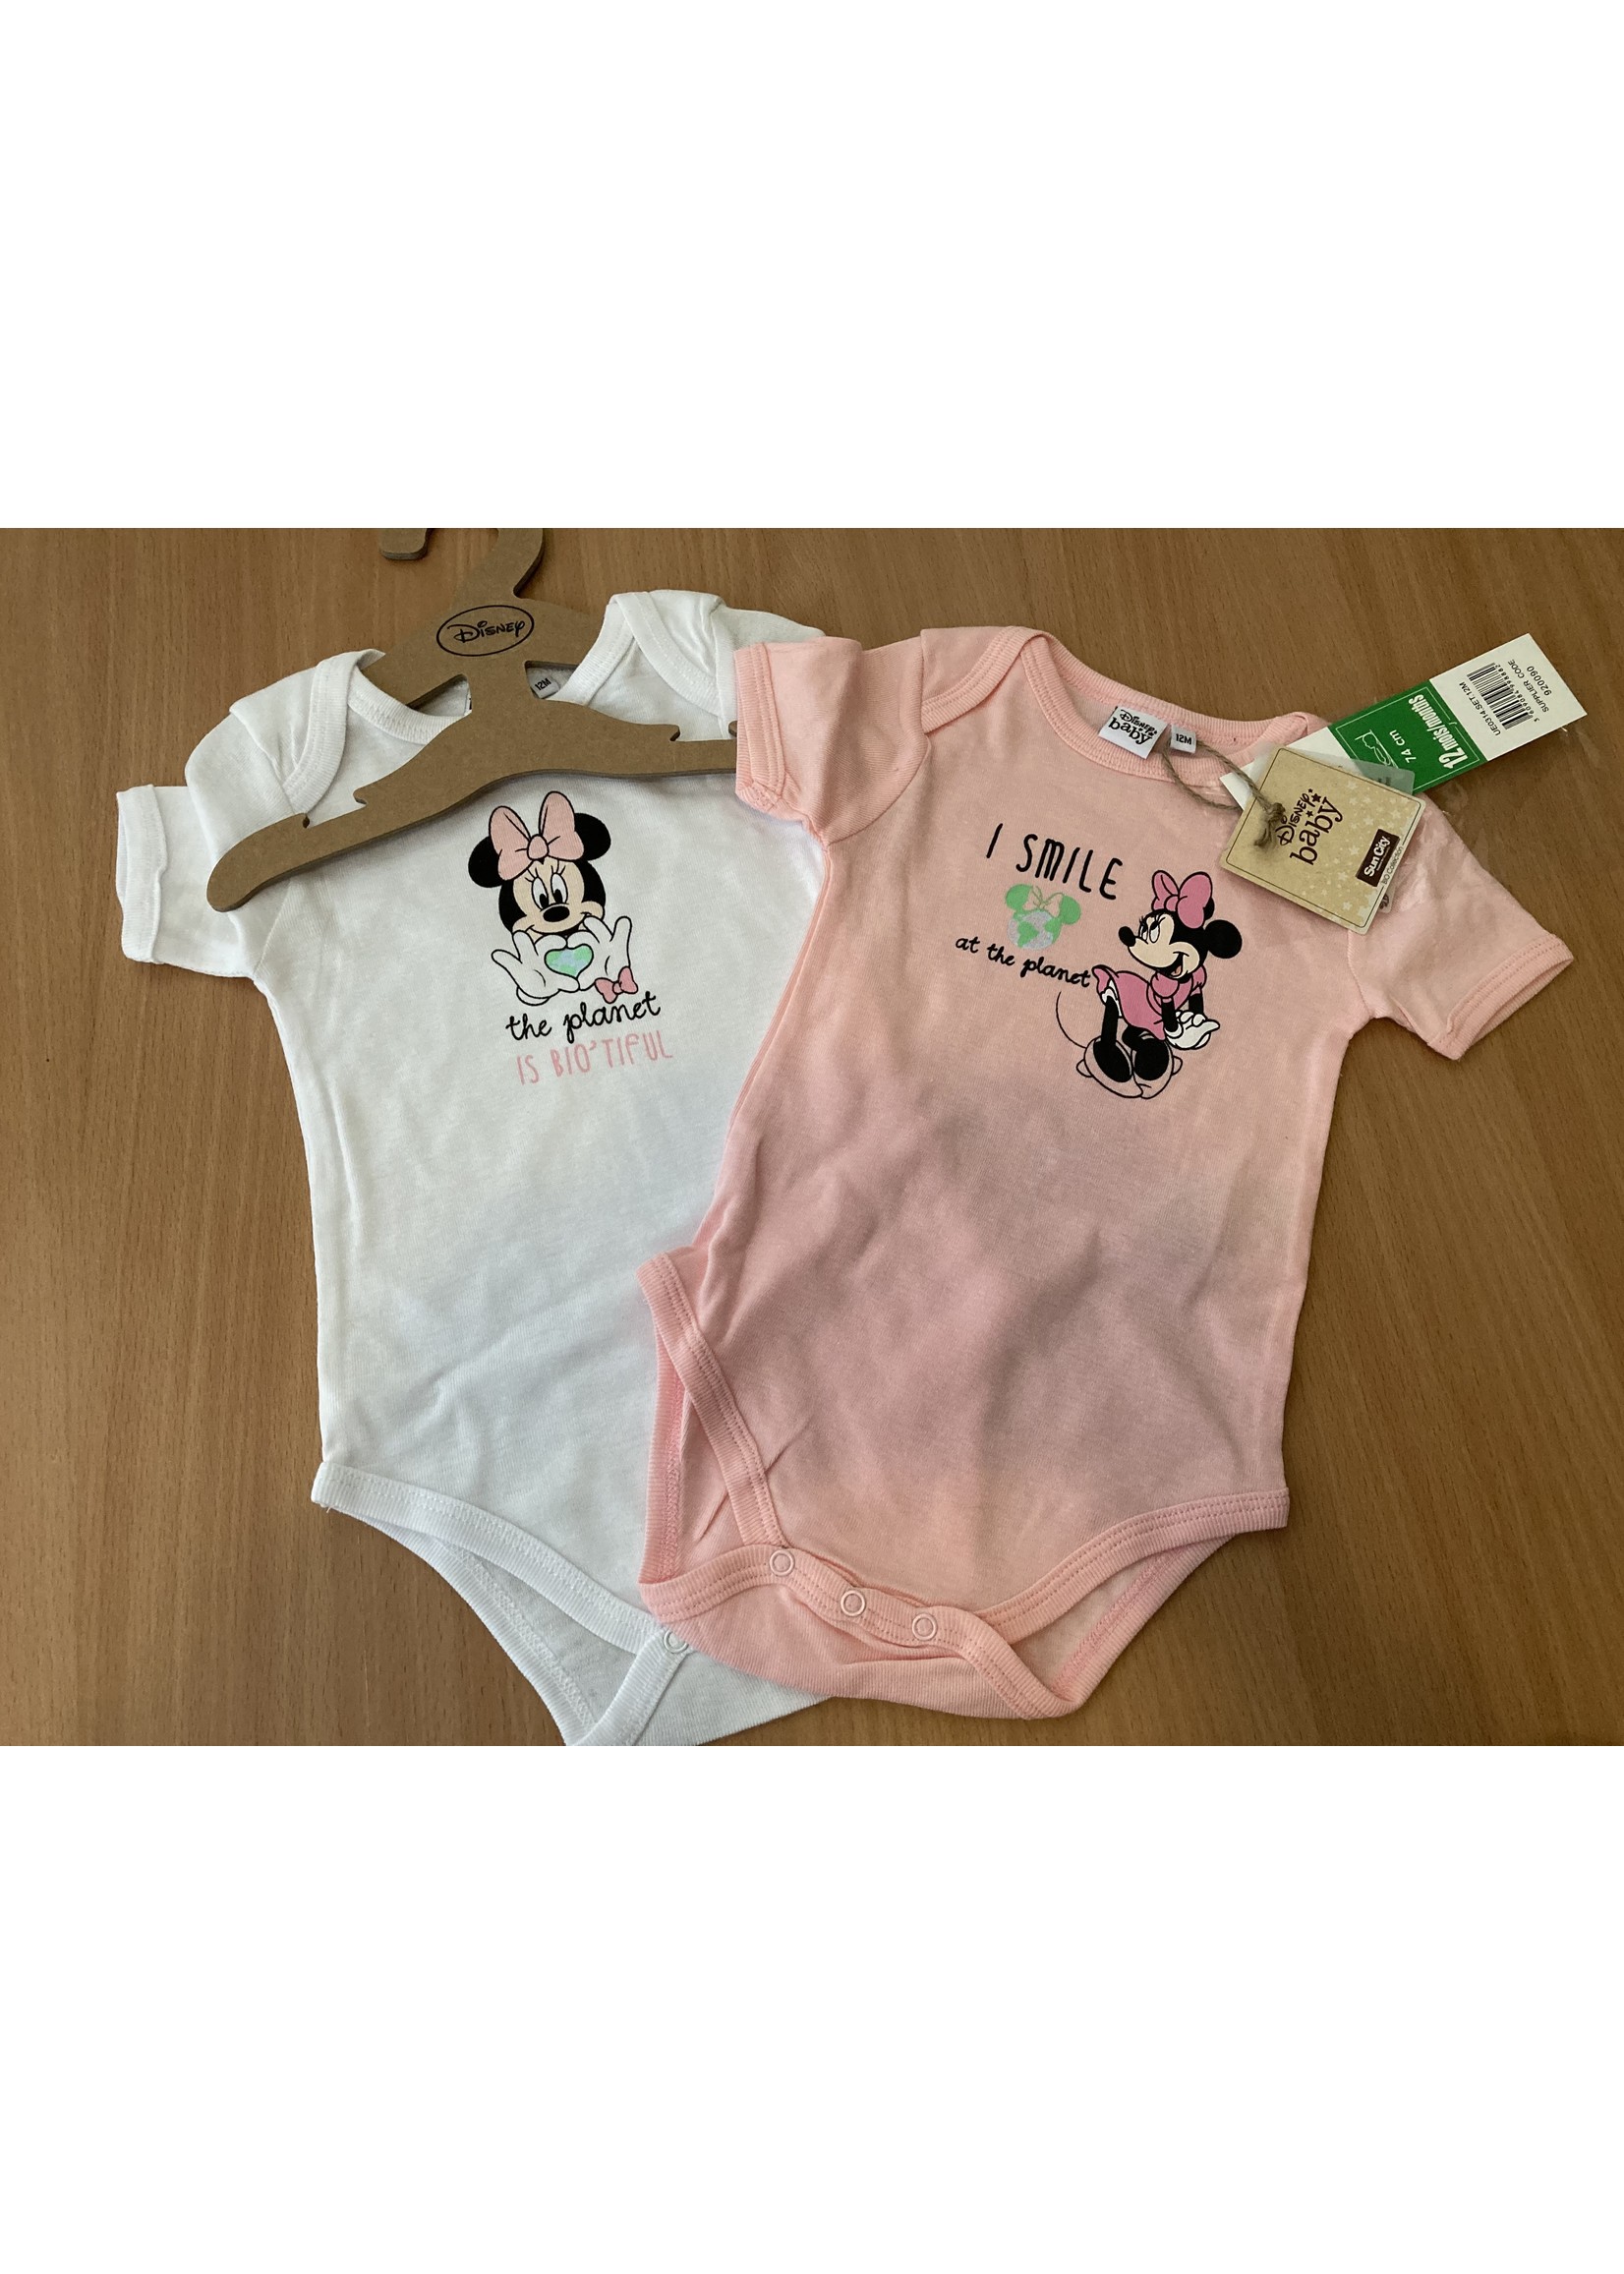 Disney baby Minnie Mouse bio rompertjes van Disney baby 2 pack